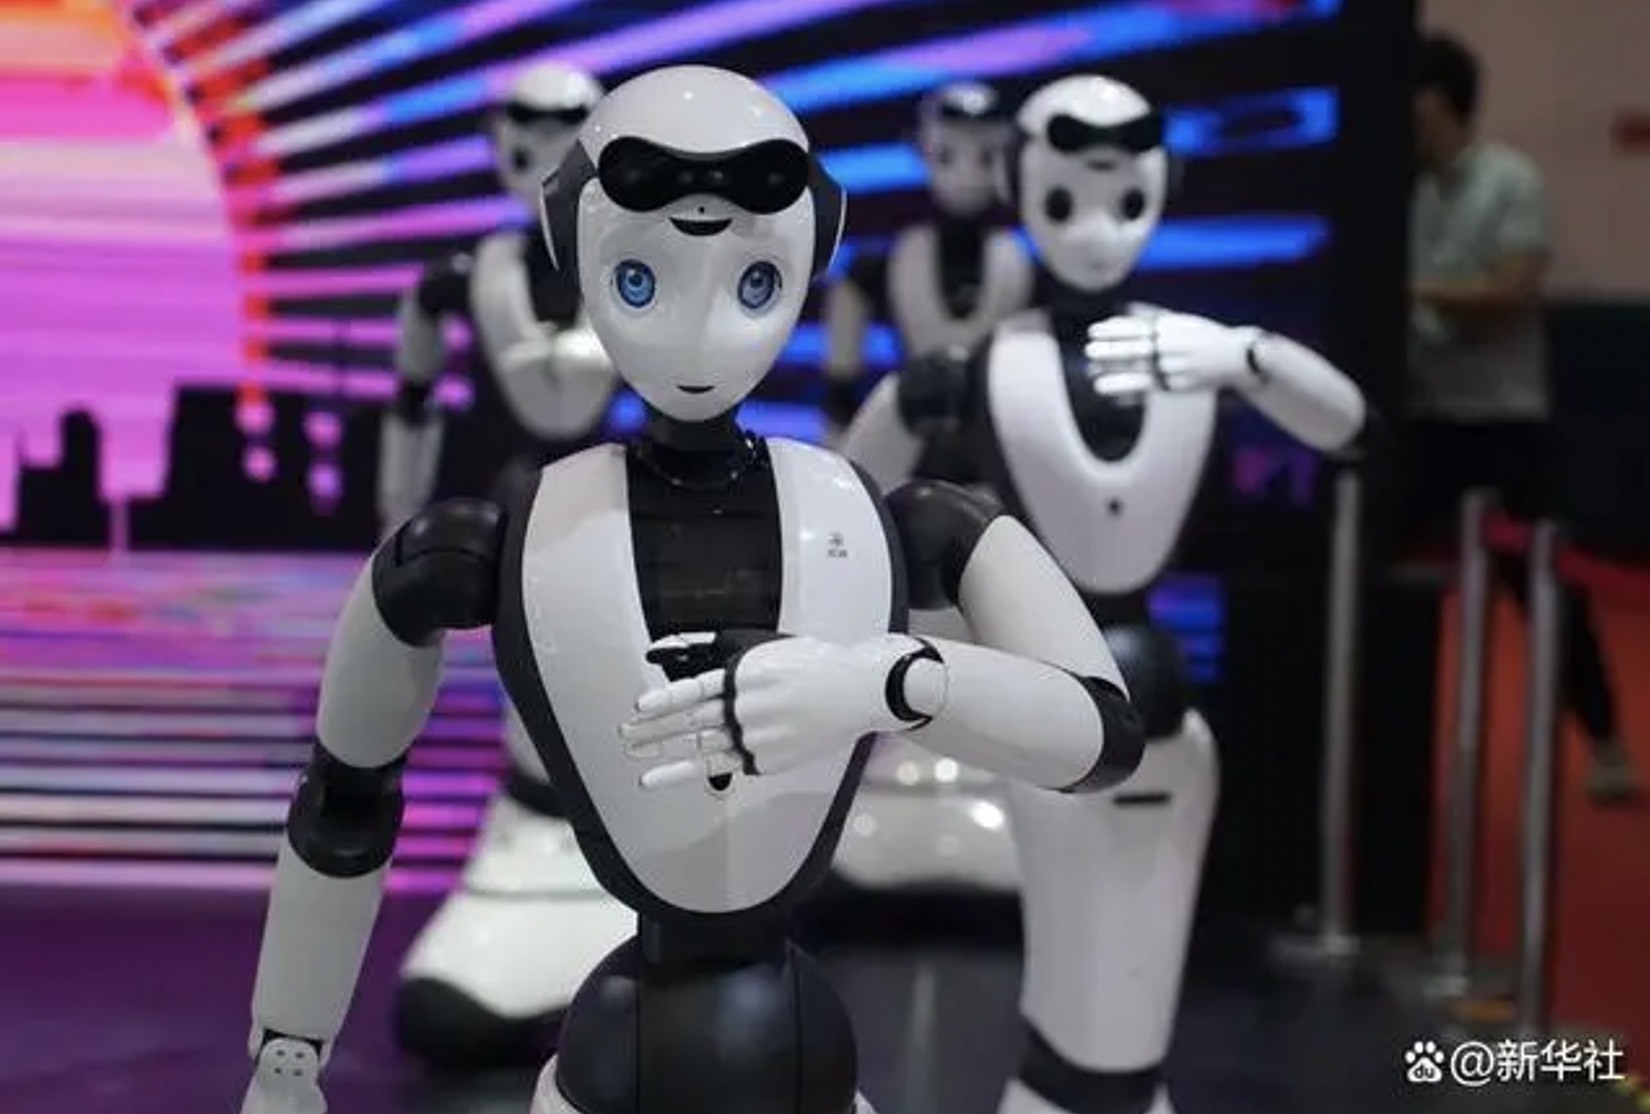 世界機器人大會丨中聯重科原來還是一家機器人制造公司